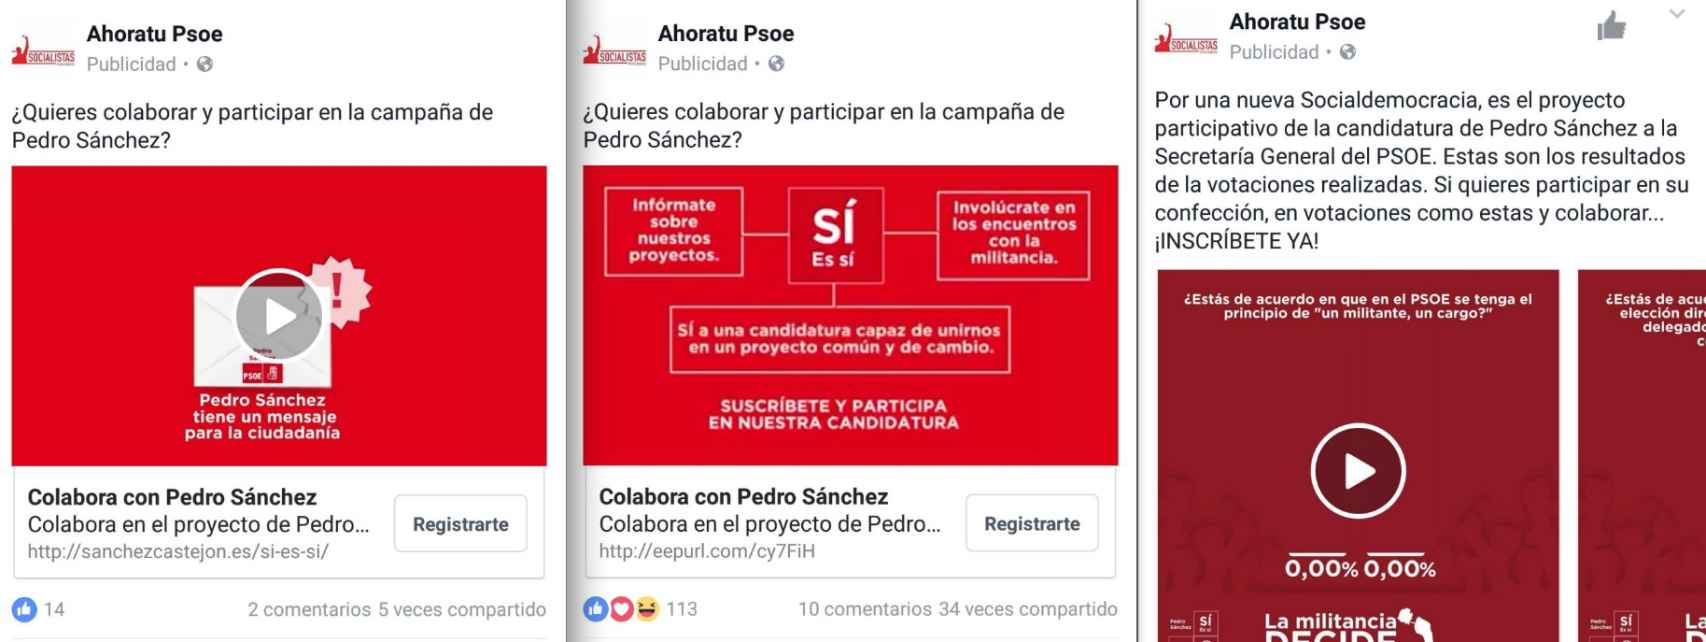 Ejemplos de anuncios de la campaña de Pedro Sánchez.